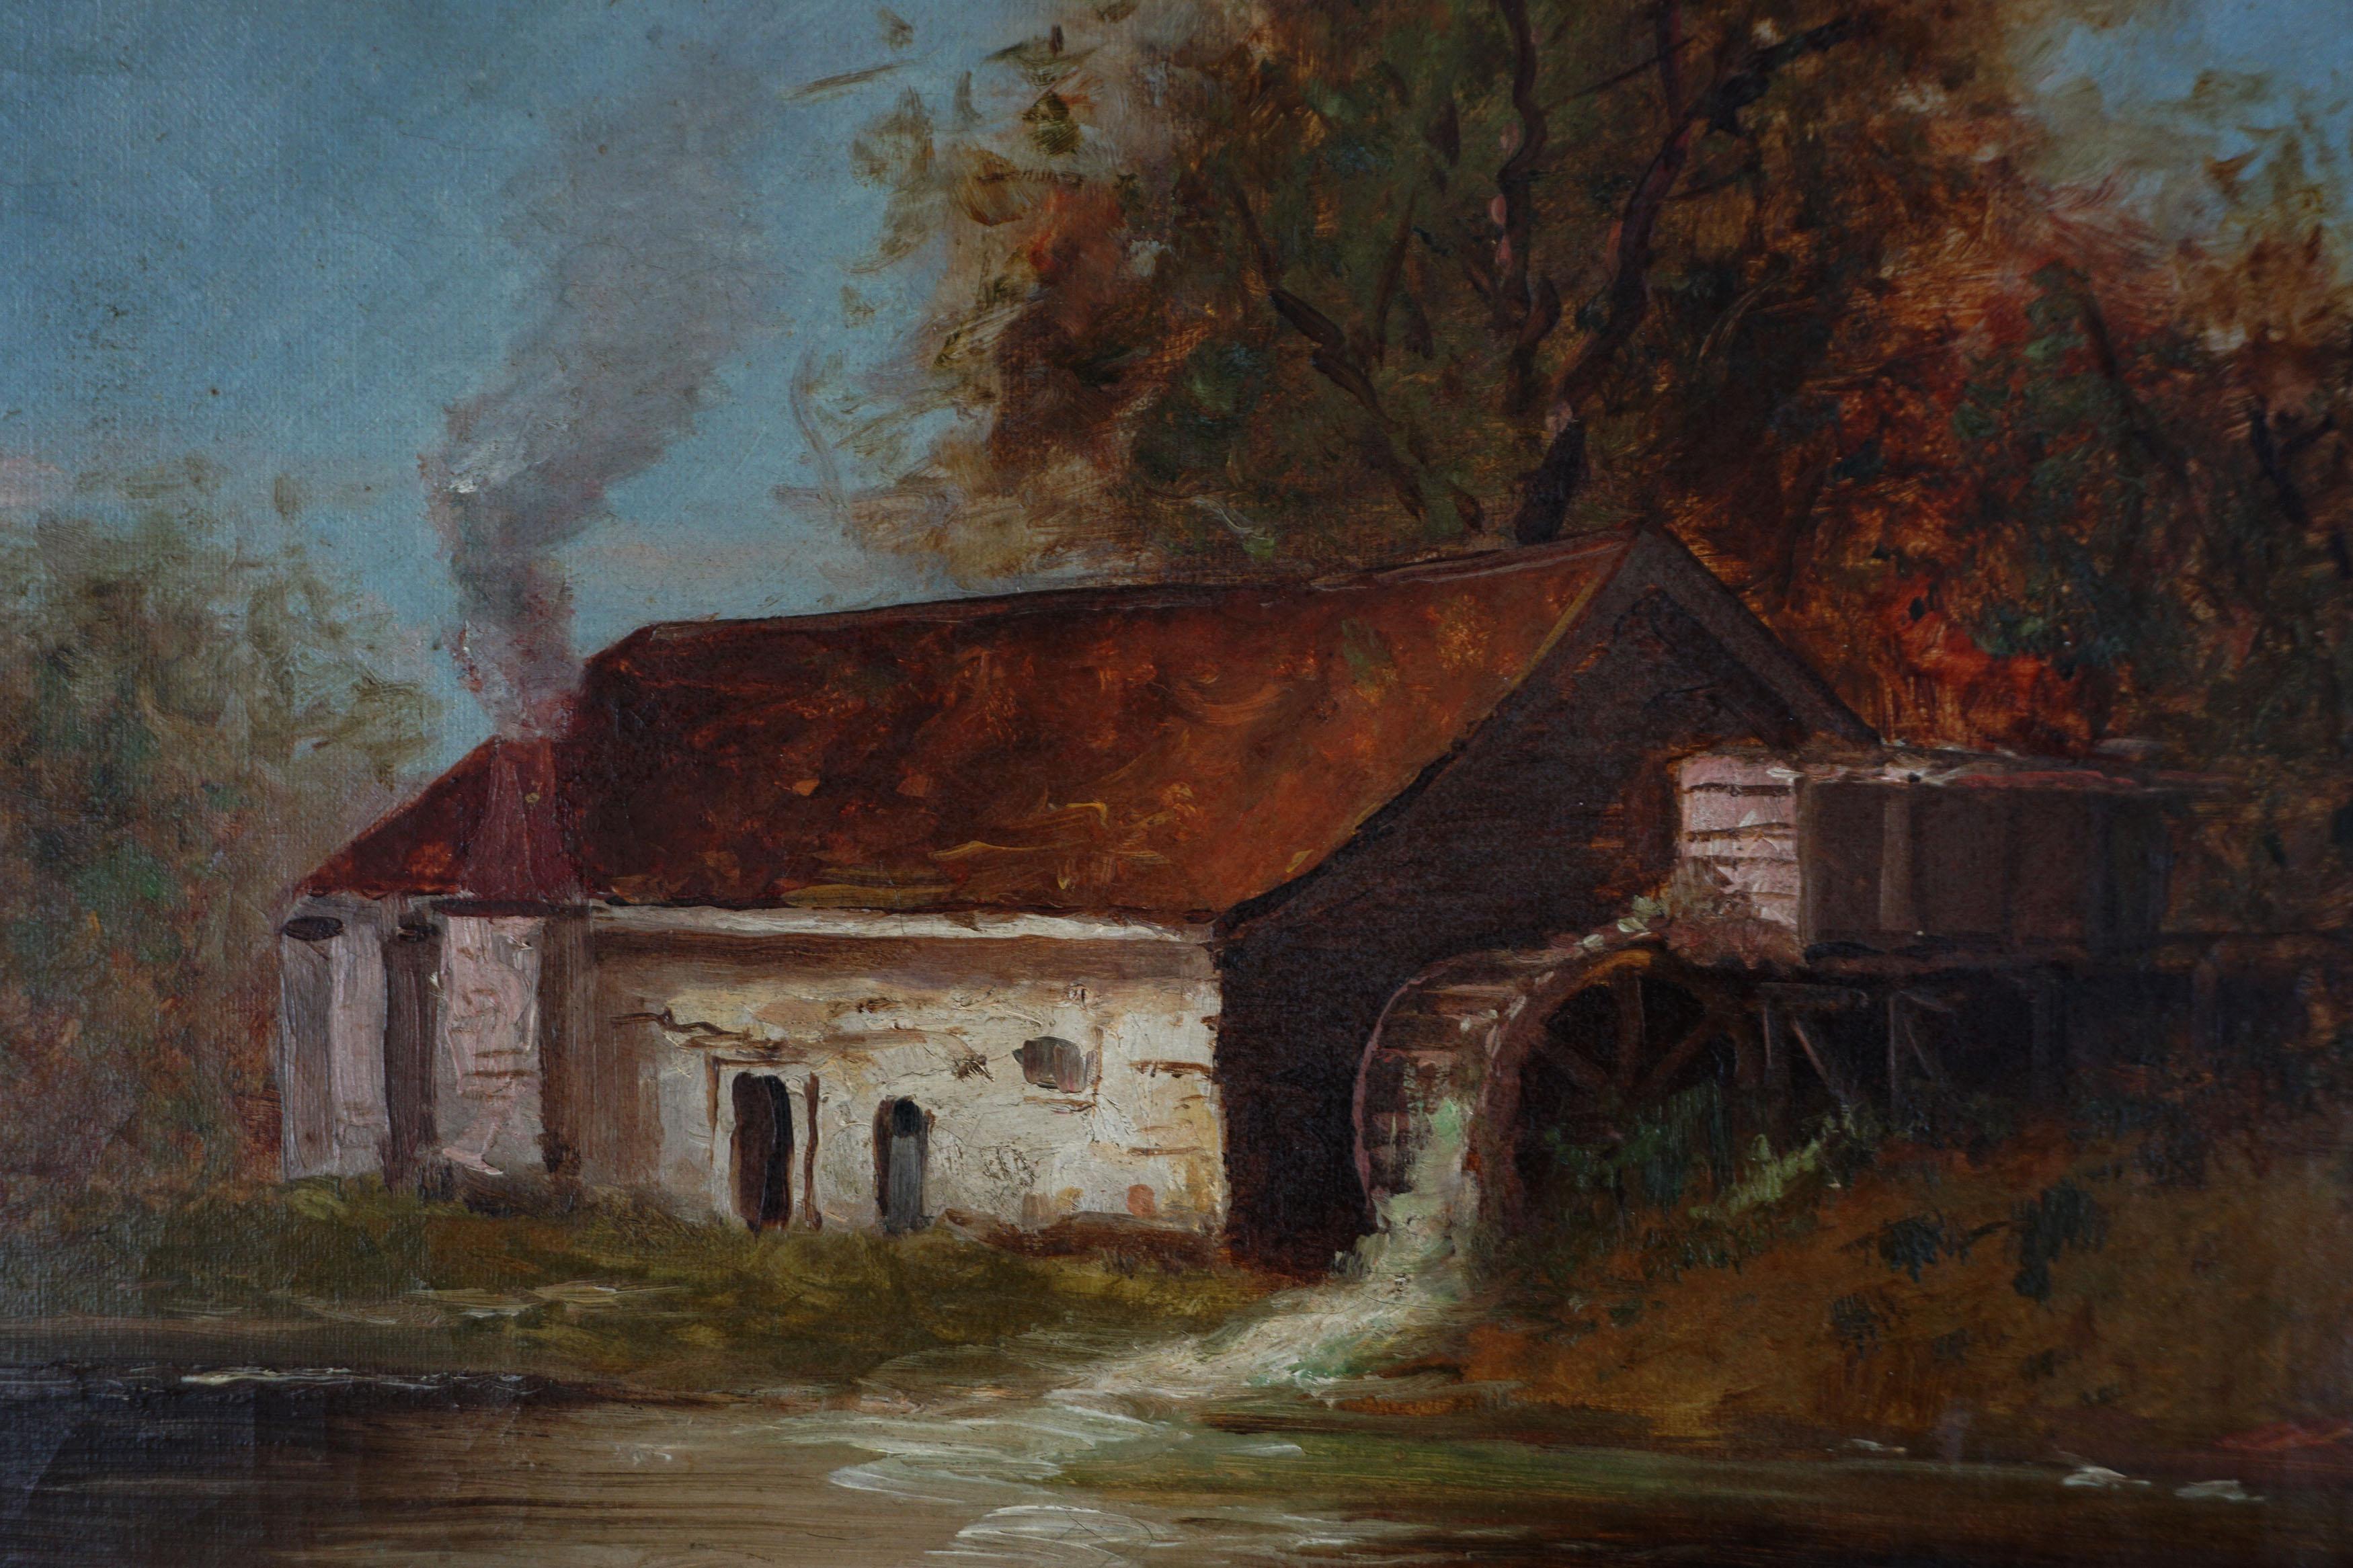 Originale Herbstlandschaft des frühen 20. Jahrhunderts – Die alte Adobe-Wassermühle – Painting von Unknown